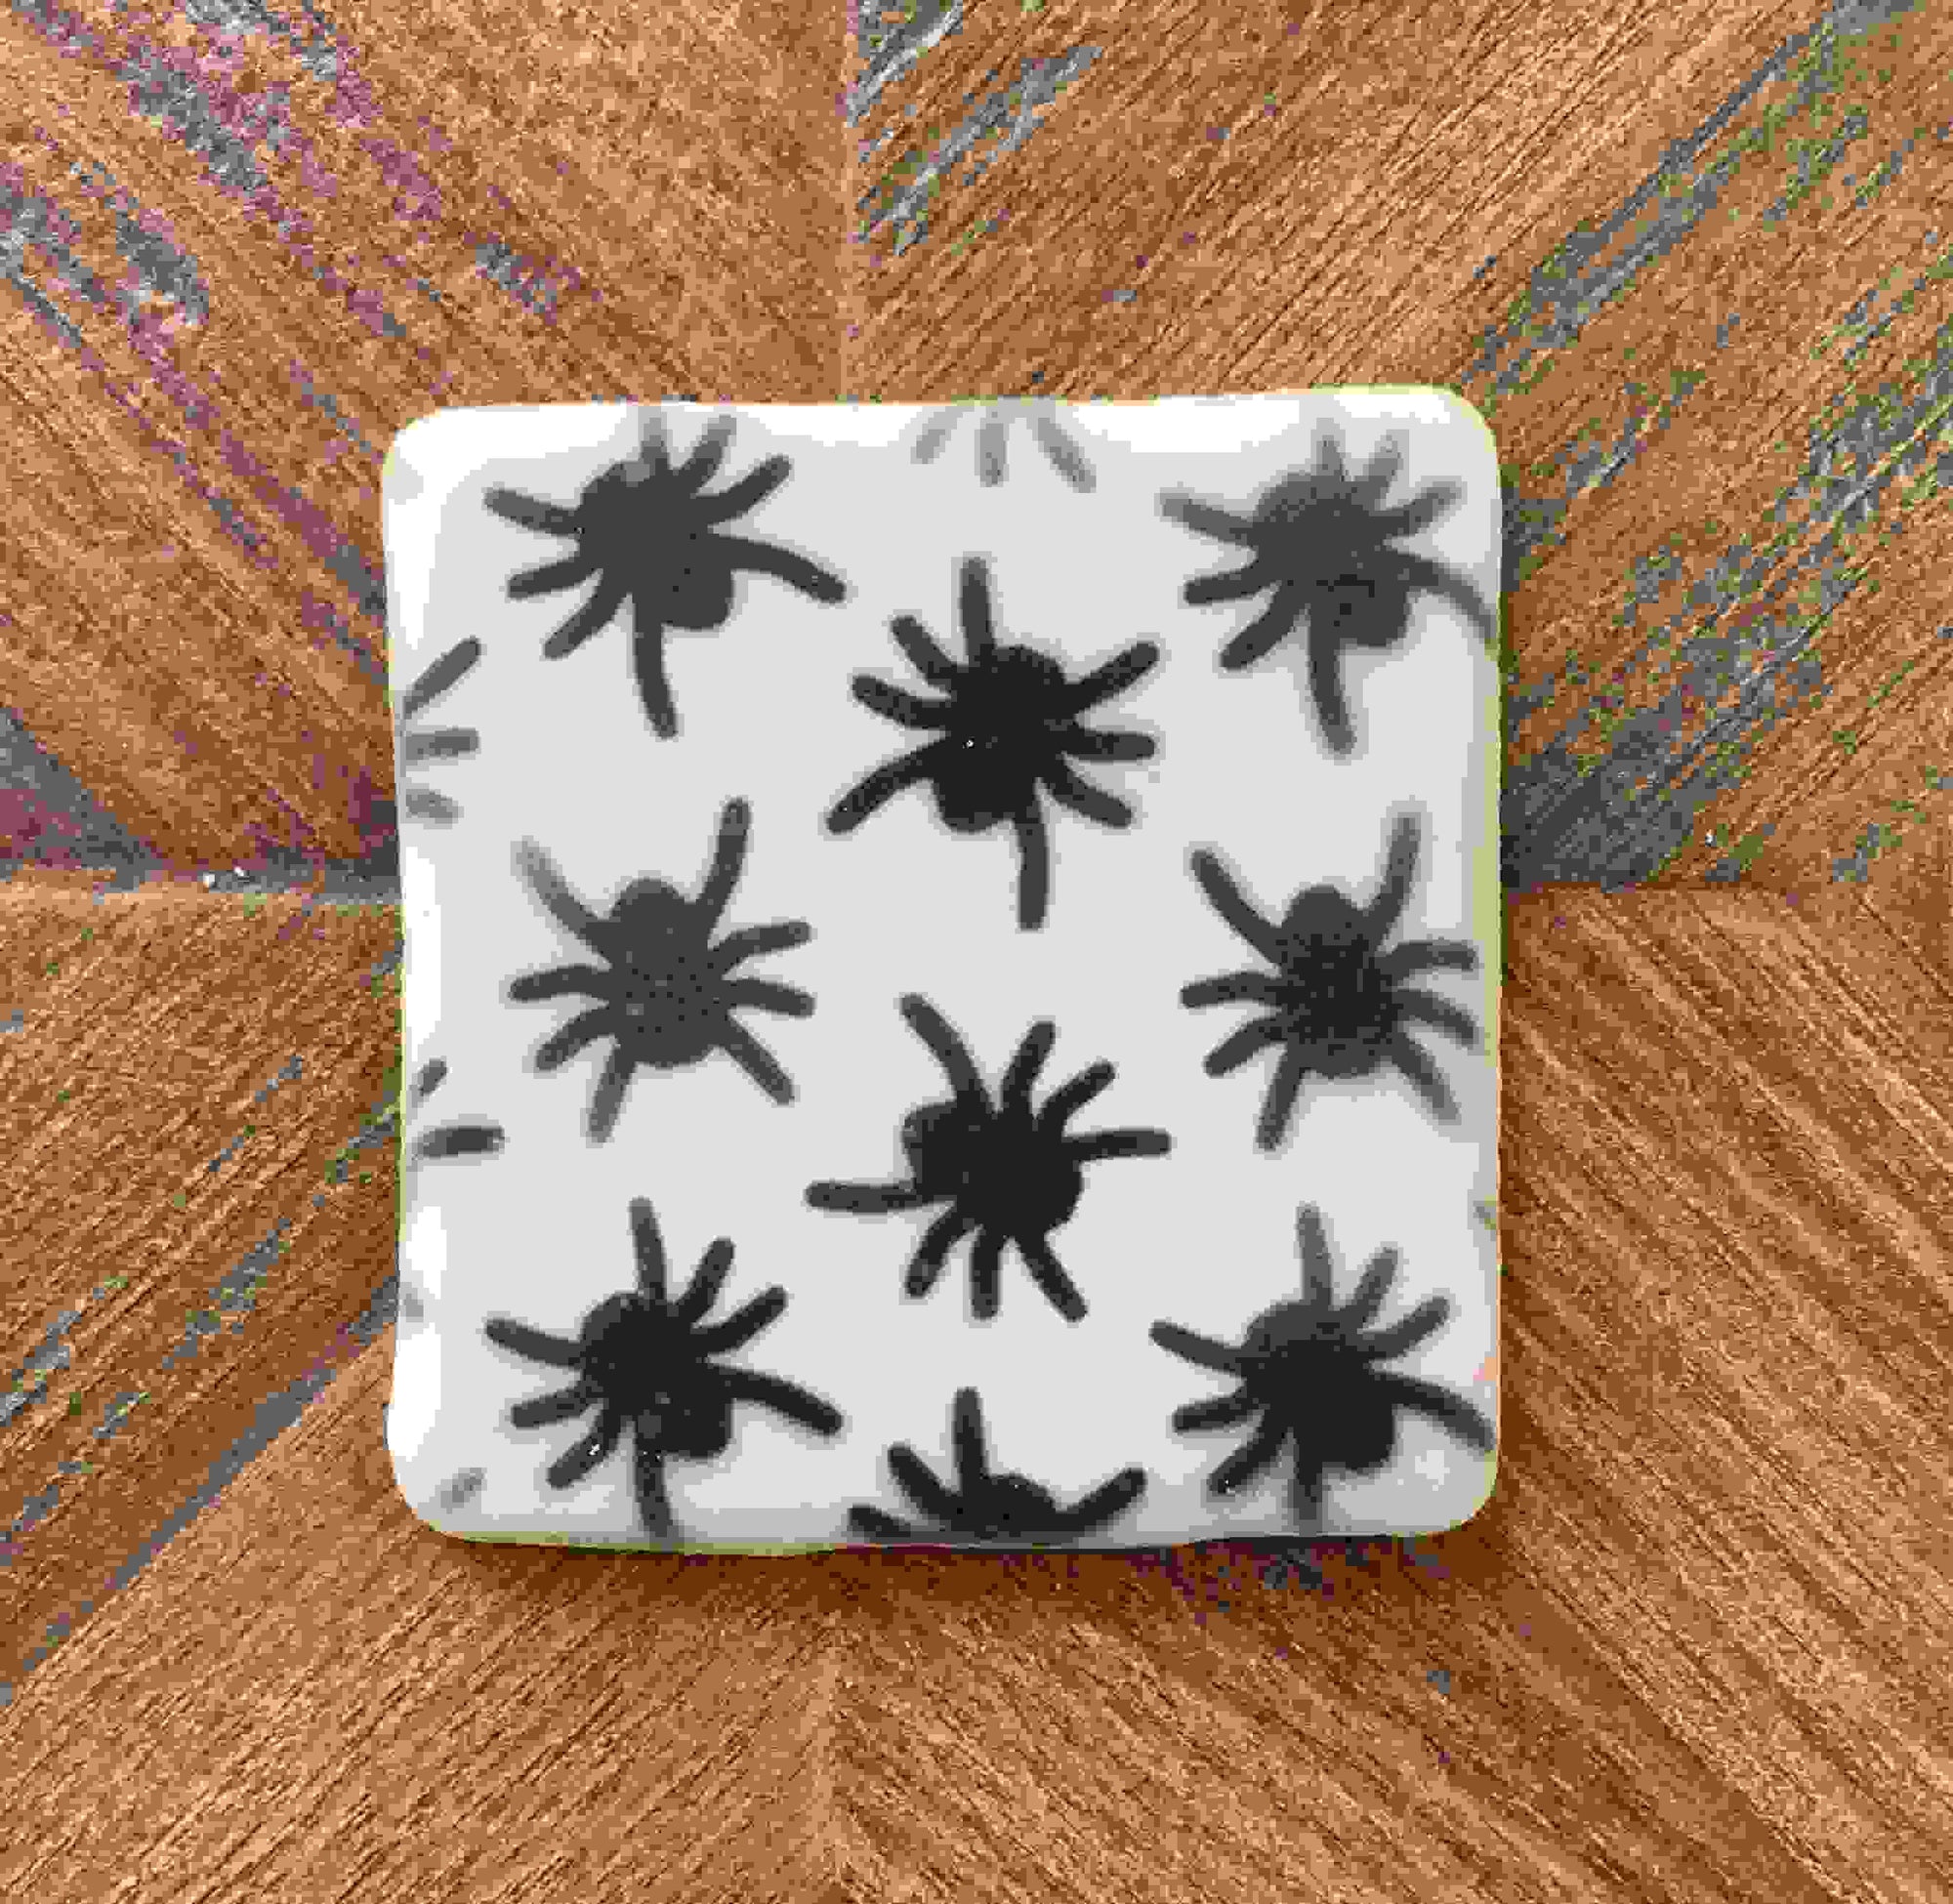 Spiders Pattern Cookie Stencil bakeartstencil